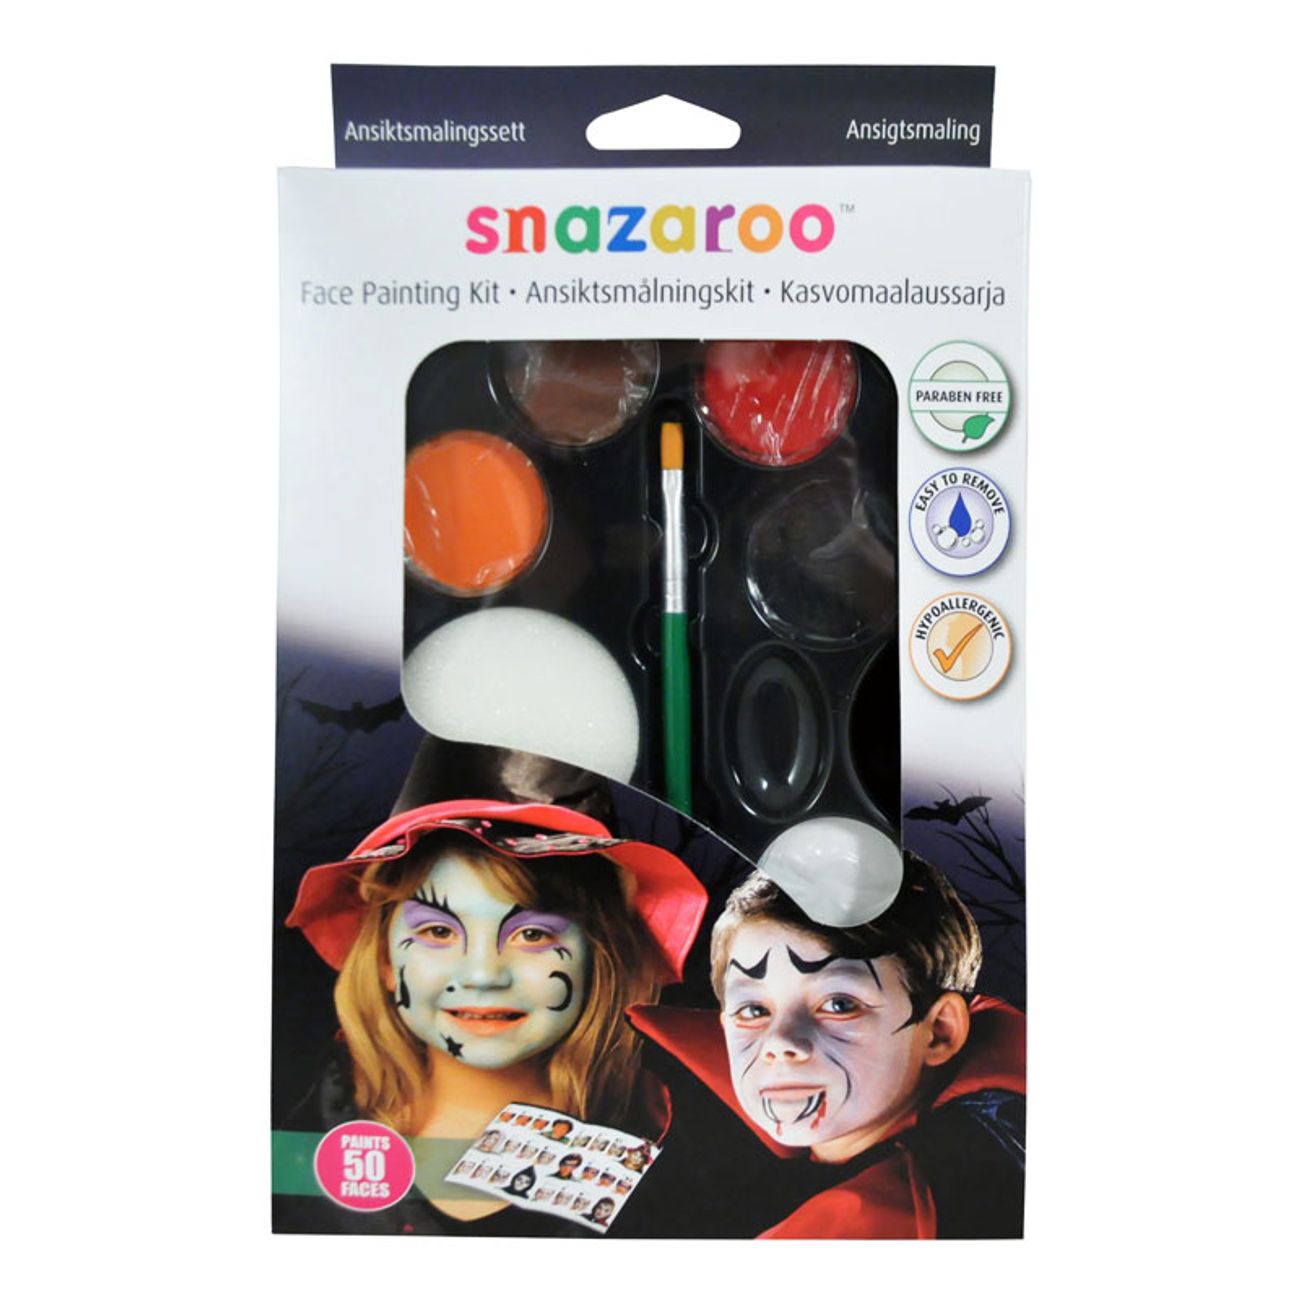 snazaroo-ansiktsmalningskit-halloween-1